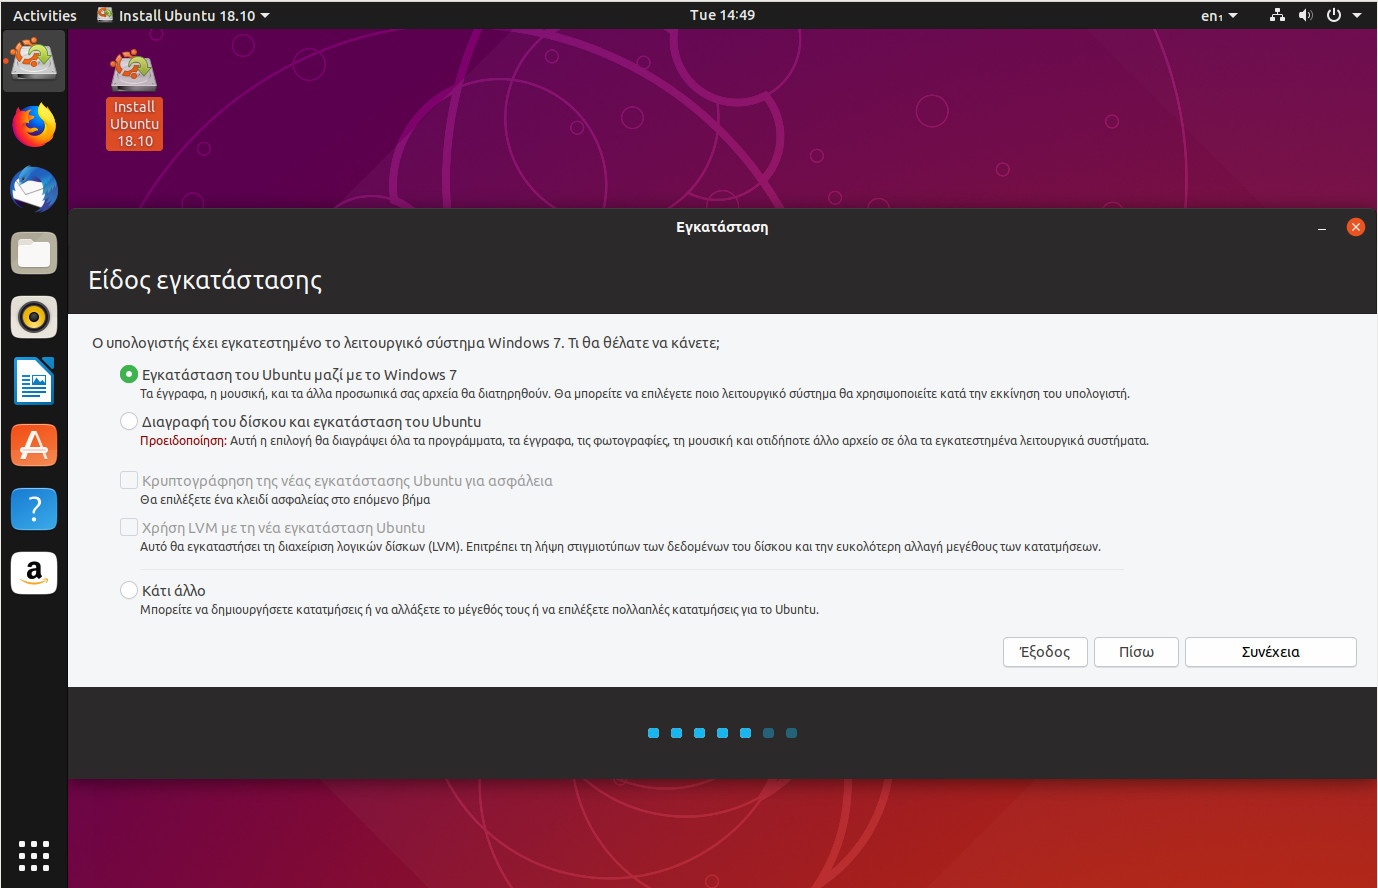 Αν υπάρχουν Windows, το Ubuntu μπορεί να εγκατασταθεί και να τρέχει παράλληλα με αυτά